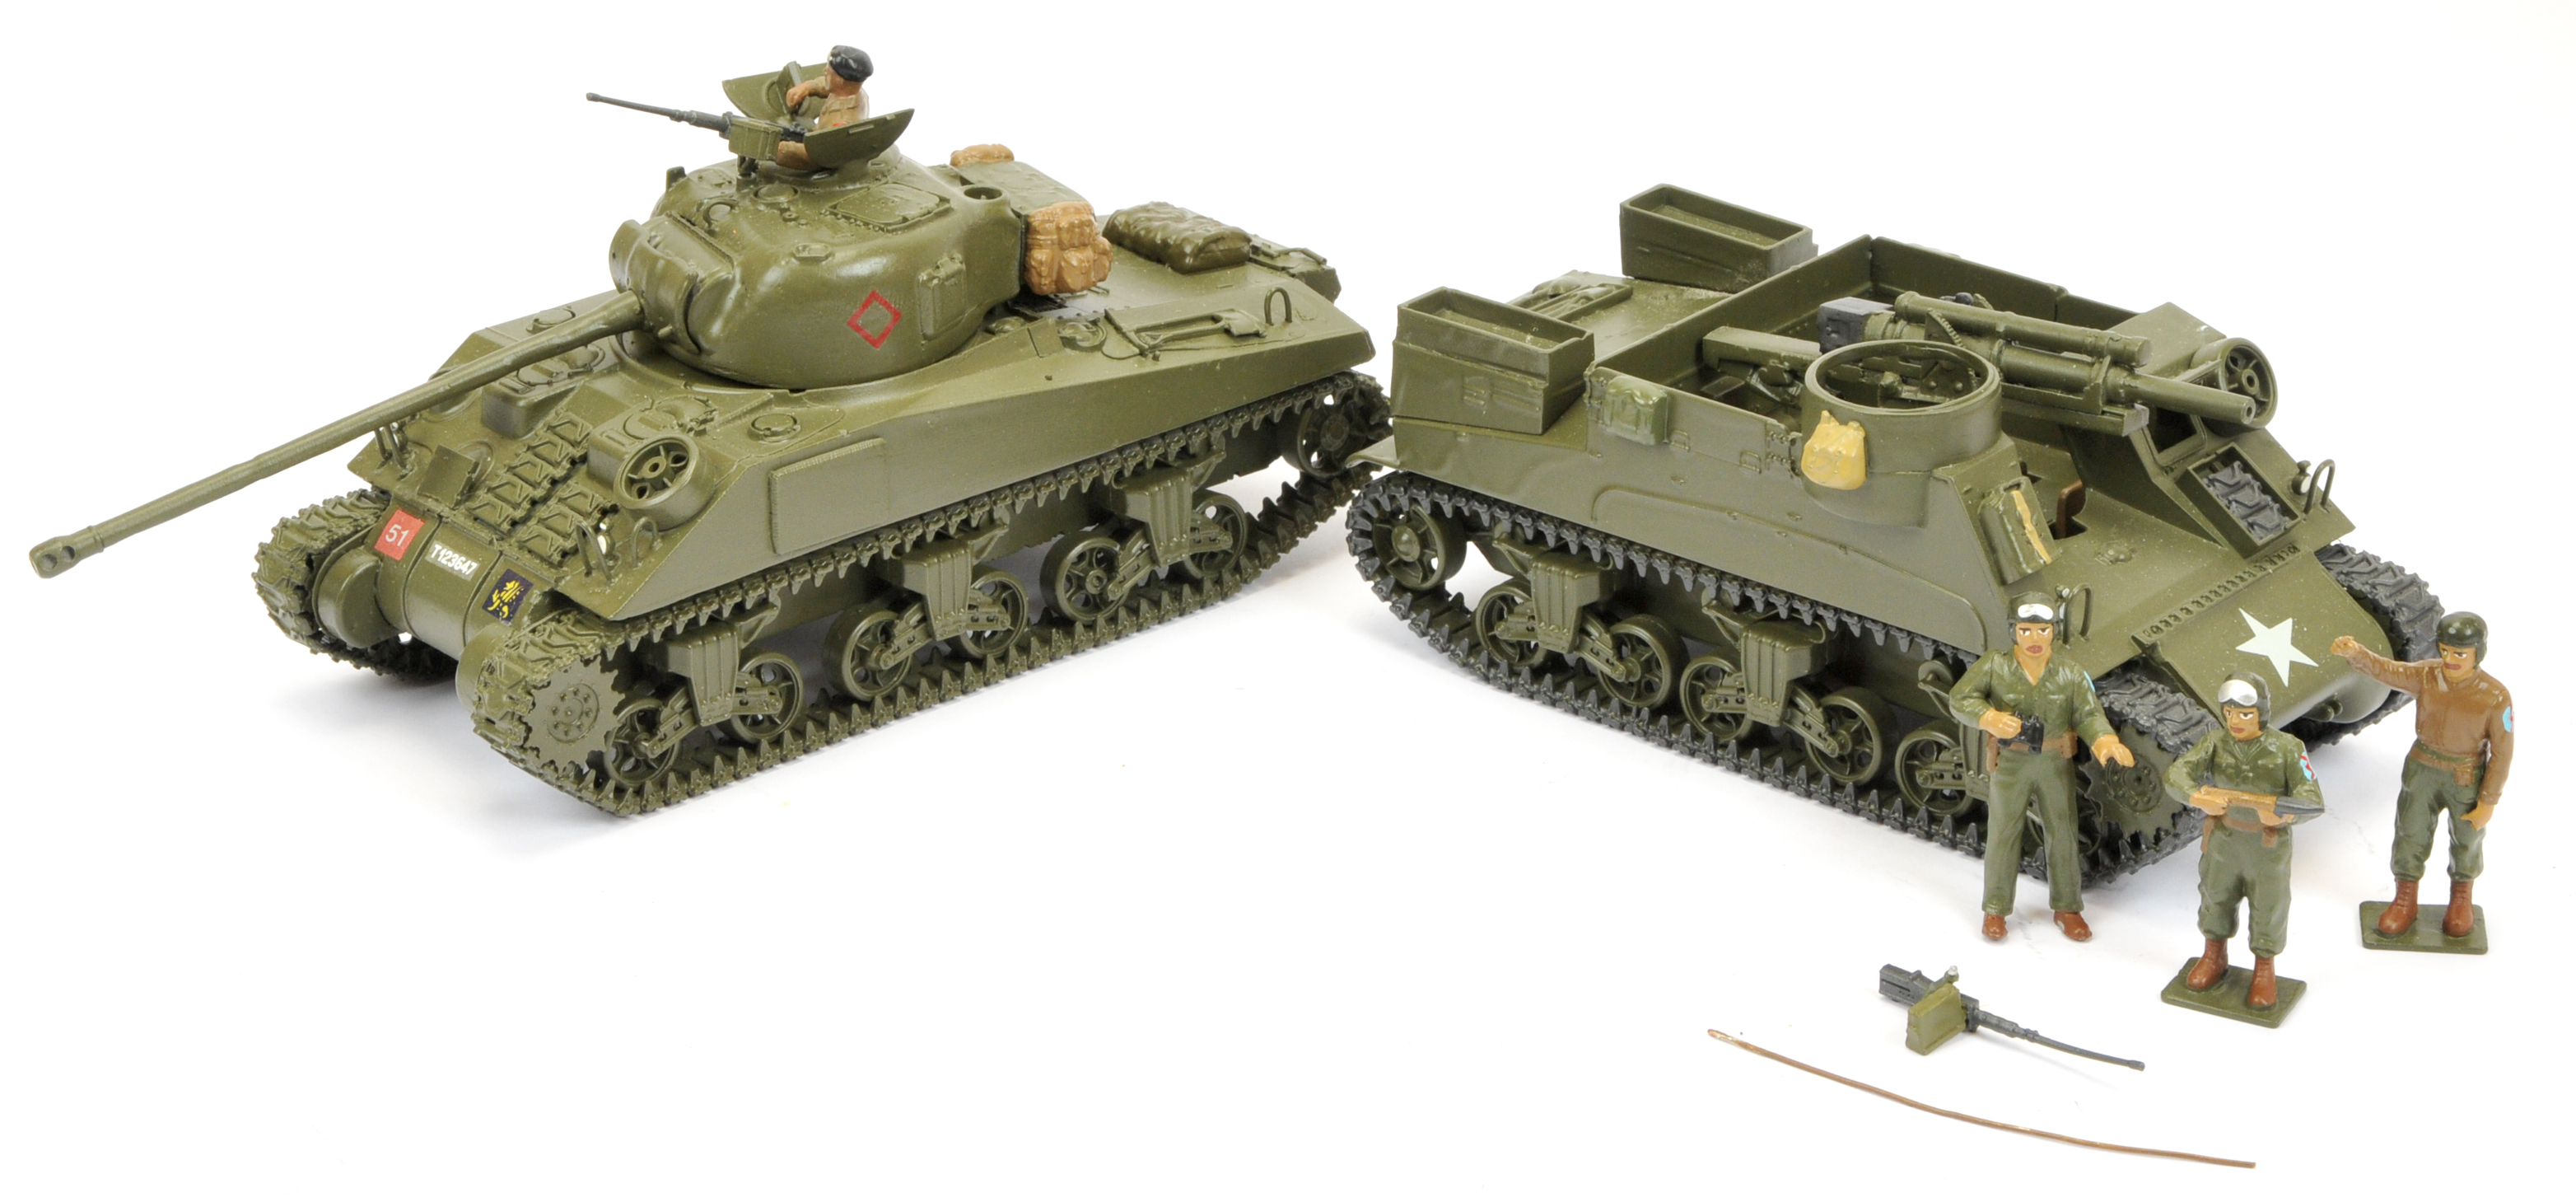 Bengurion Models Military Vehicles x2 - Image 2 of 2